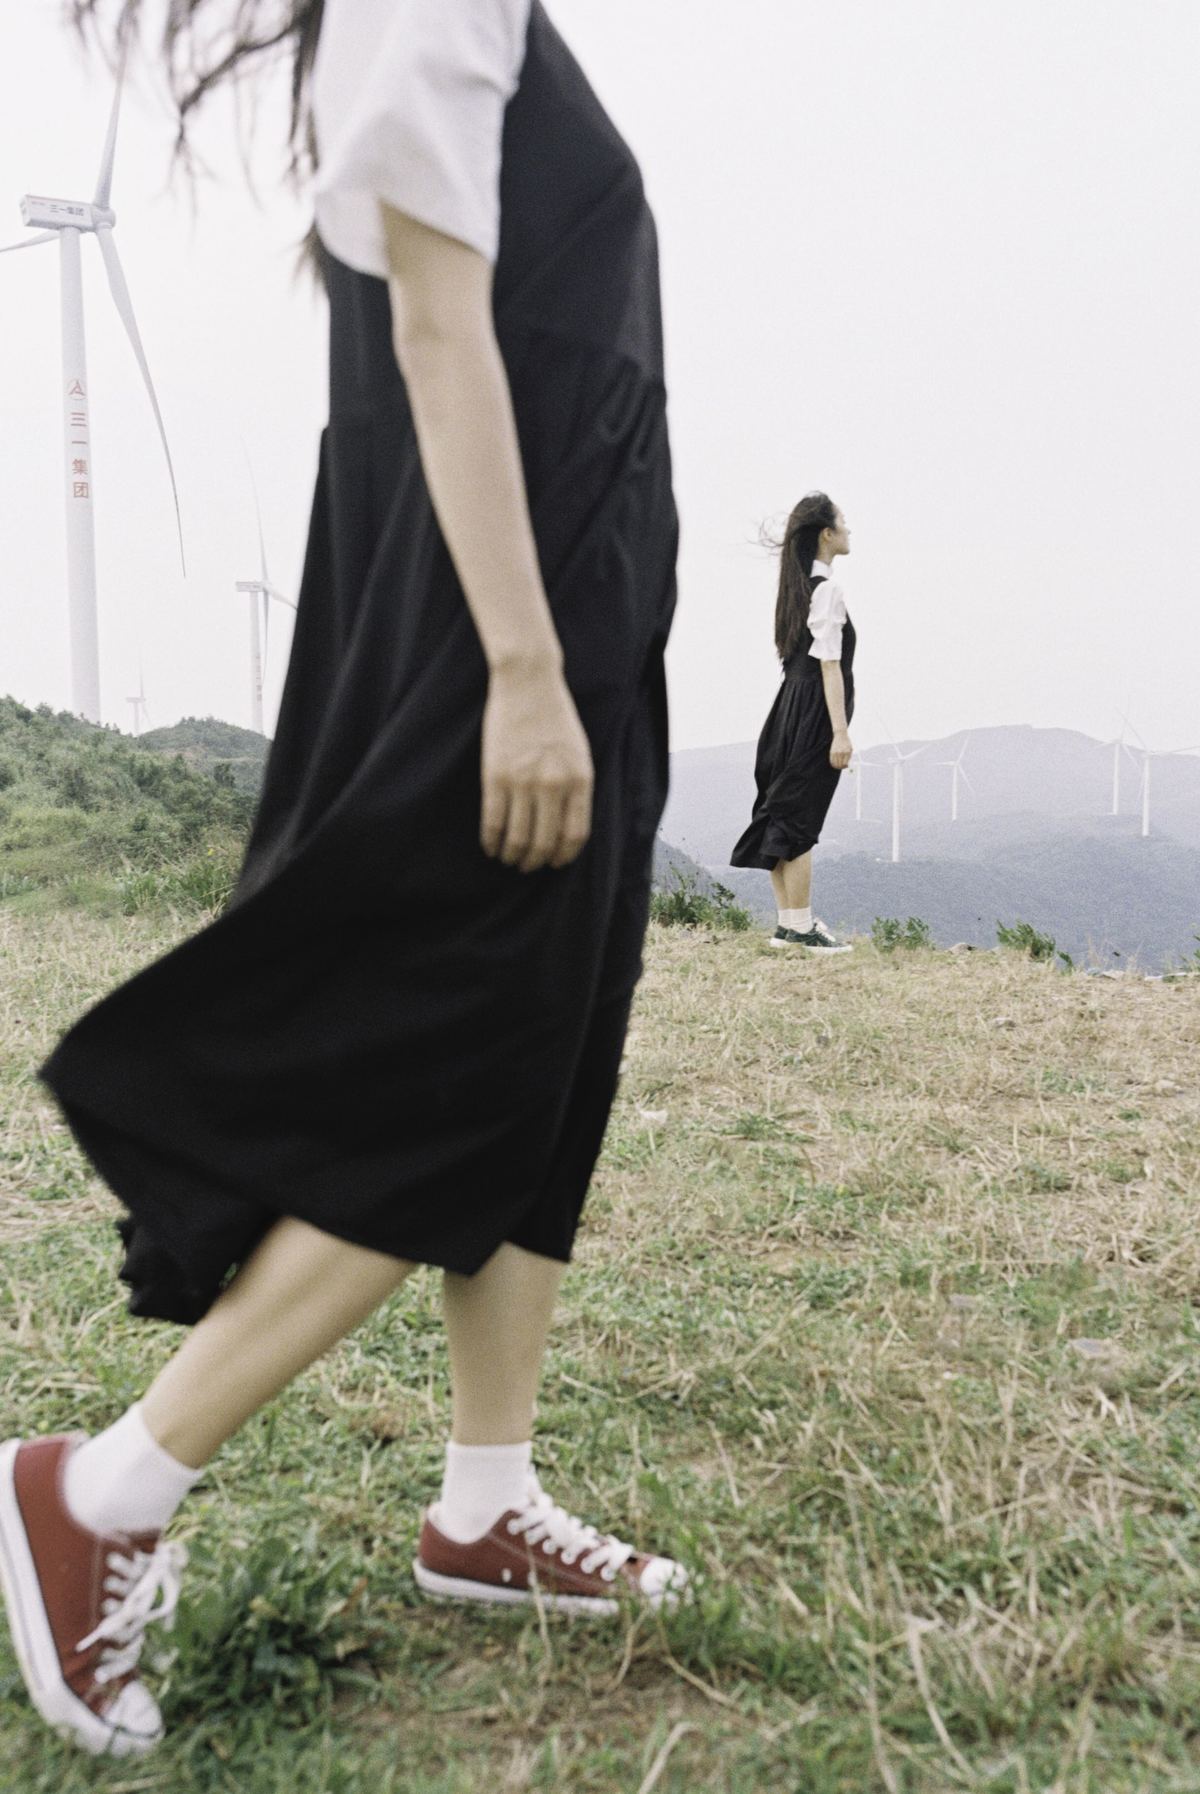 一个人穿着黑色连衣裙在草地上行走 背景是风车。